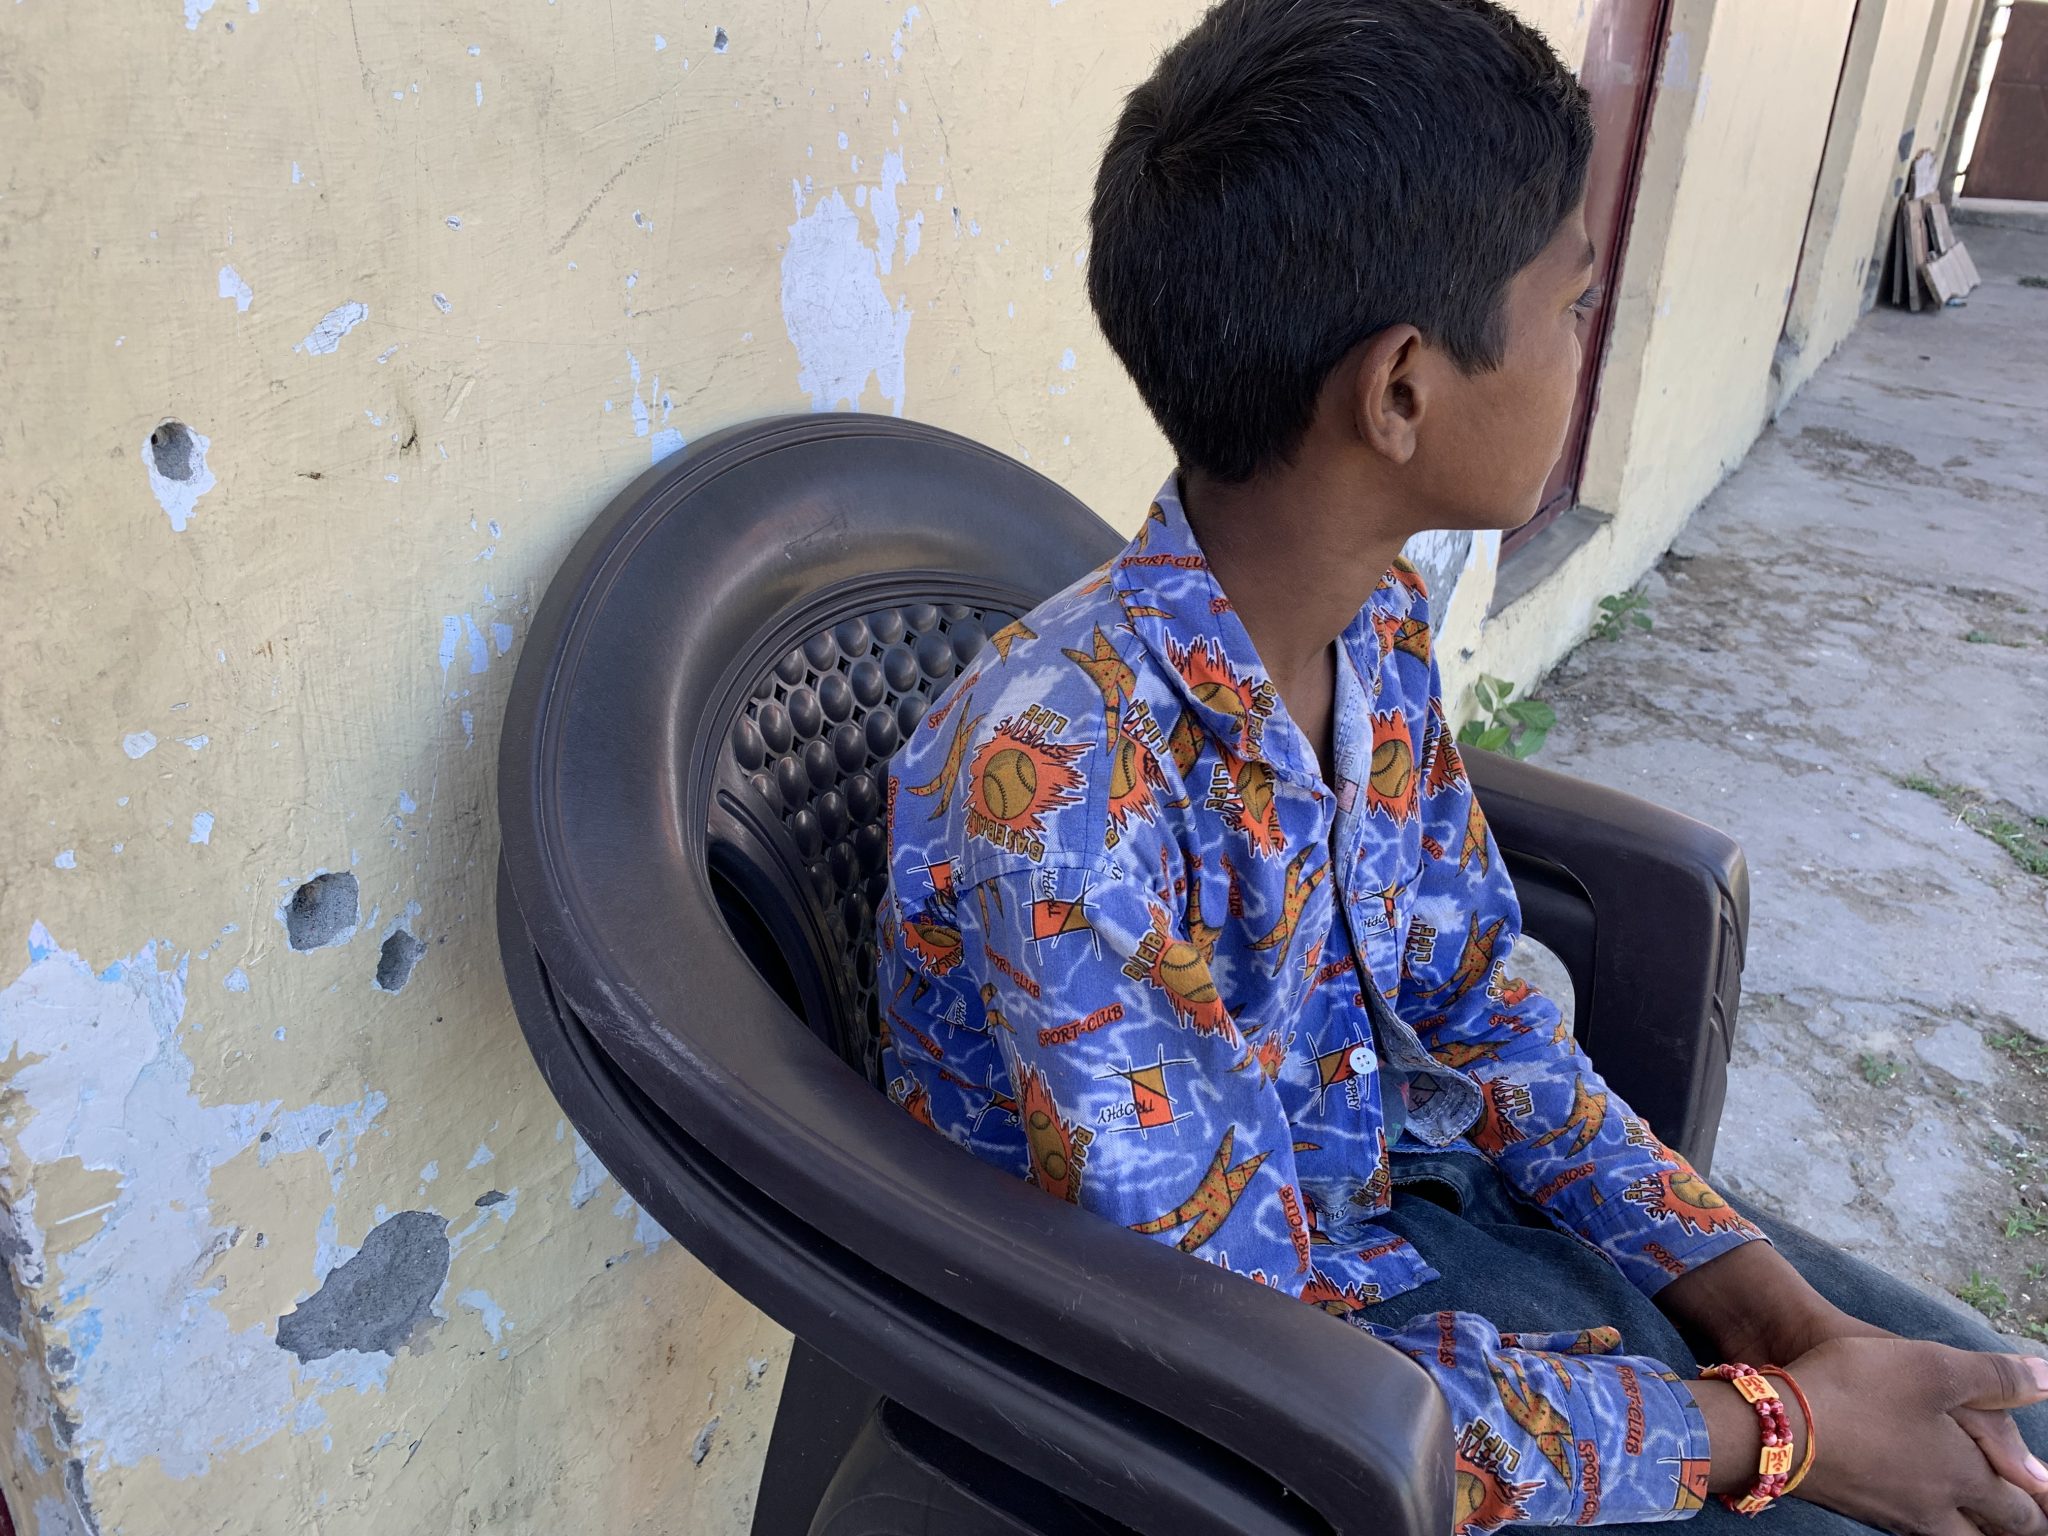 Geetikan poika istuu ulkona talon seinän vierustalla mustalla muovituolilla. Hänen kasvonsa ovat pois päin kamerasta. Hänellä on mustat hiukset ja kirjava sini-oranssi -kauluspaita päällään.